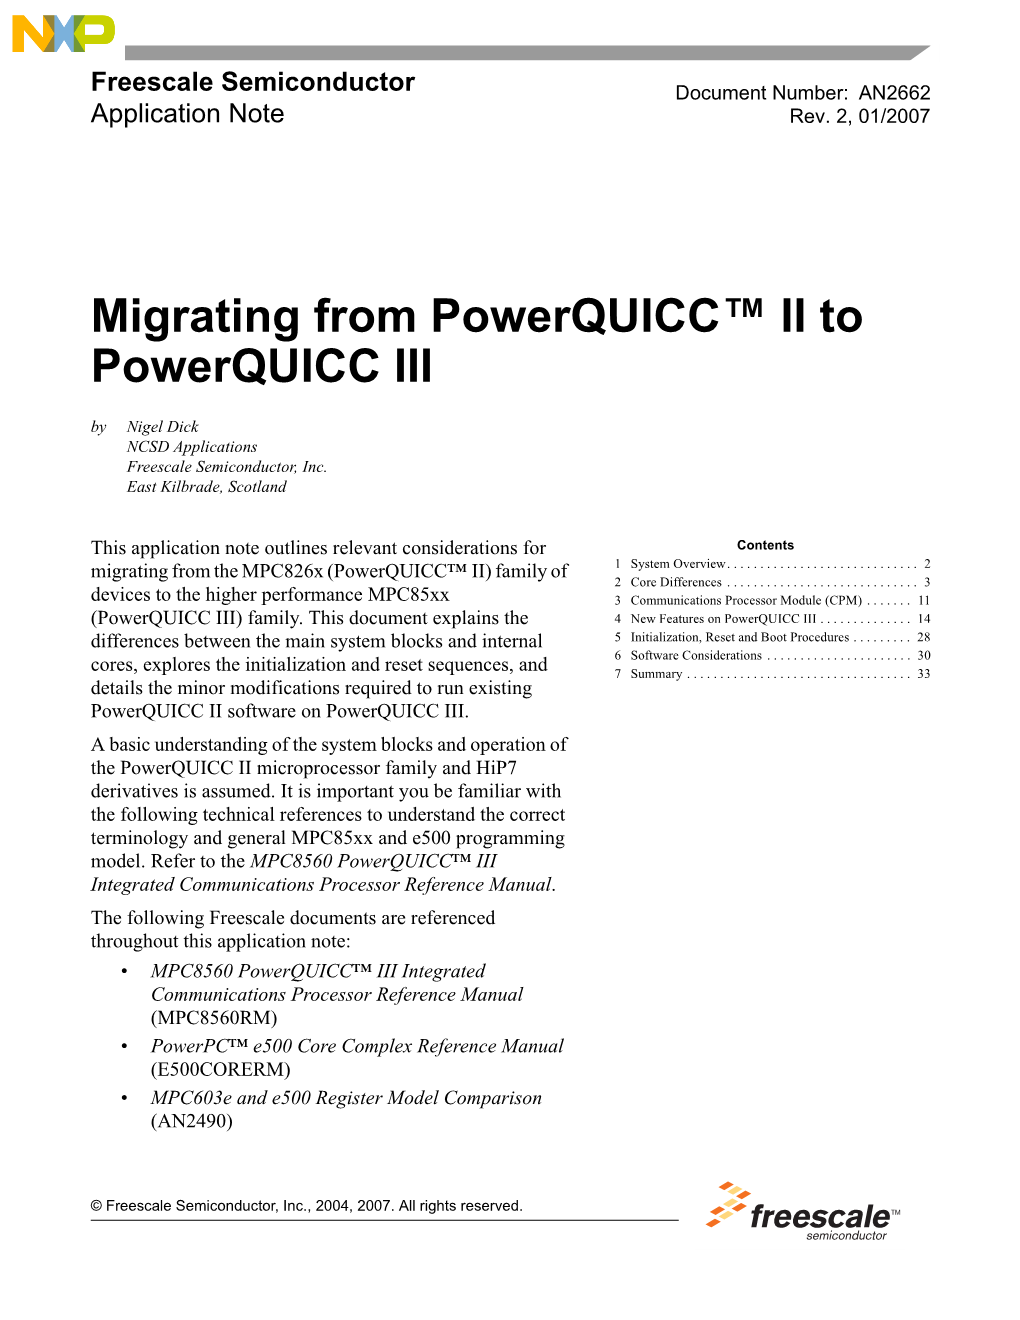 Migrating from Powerquicc II to Powerquicc III